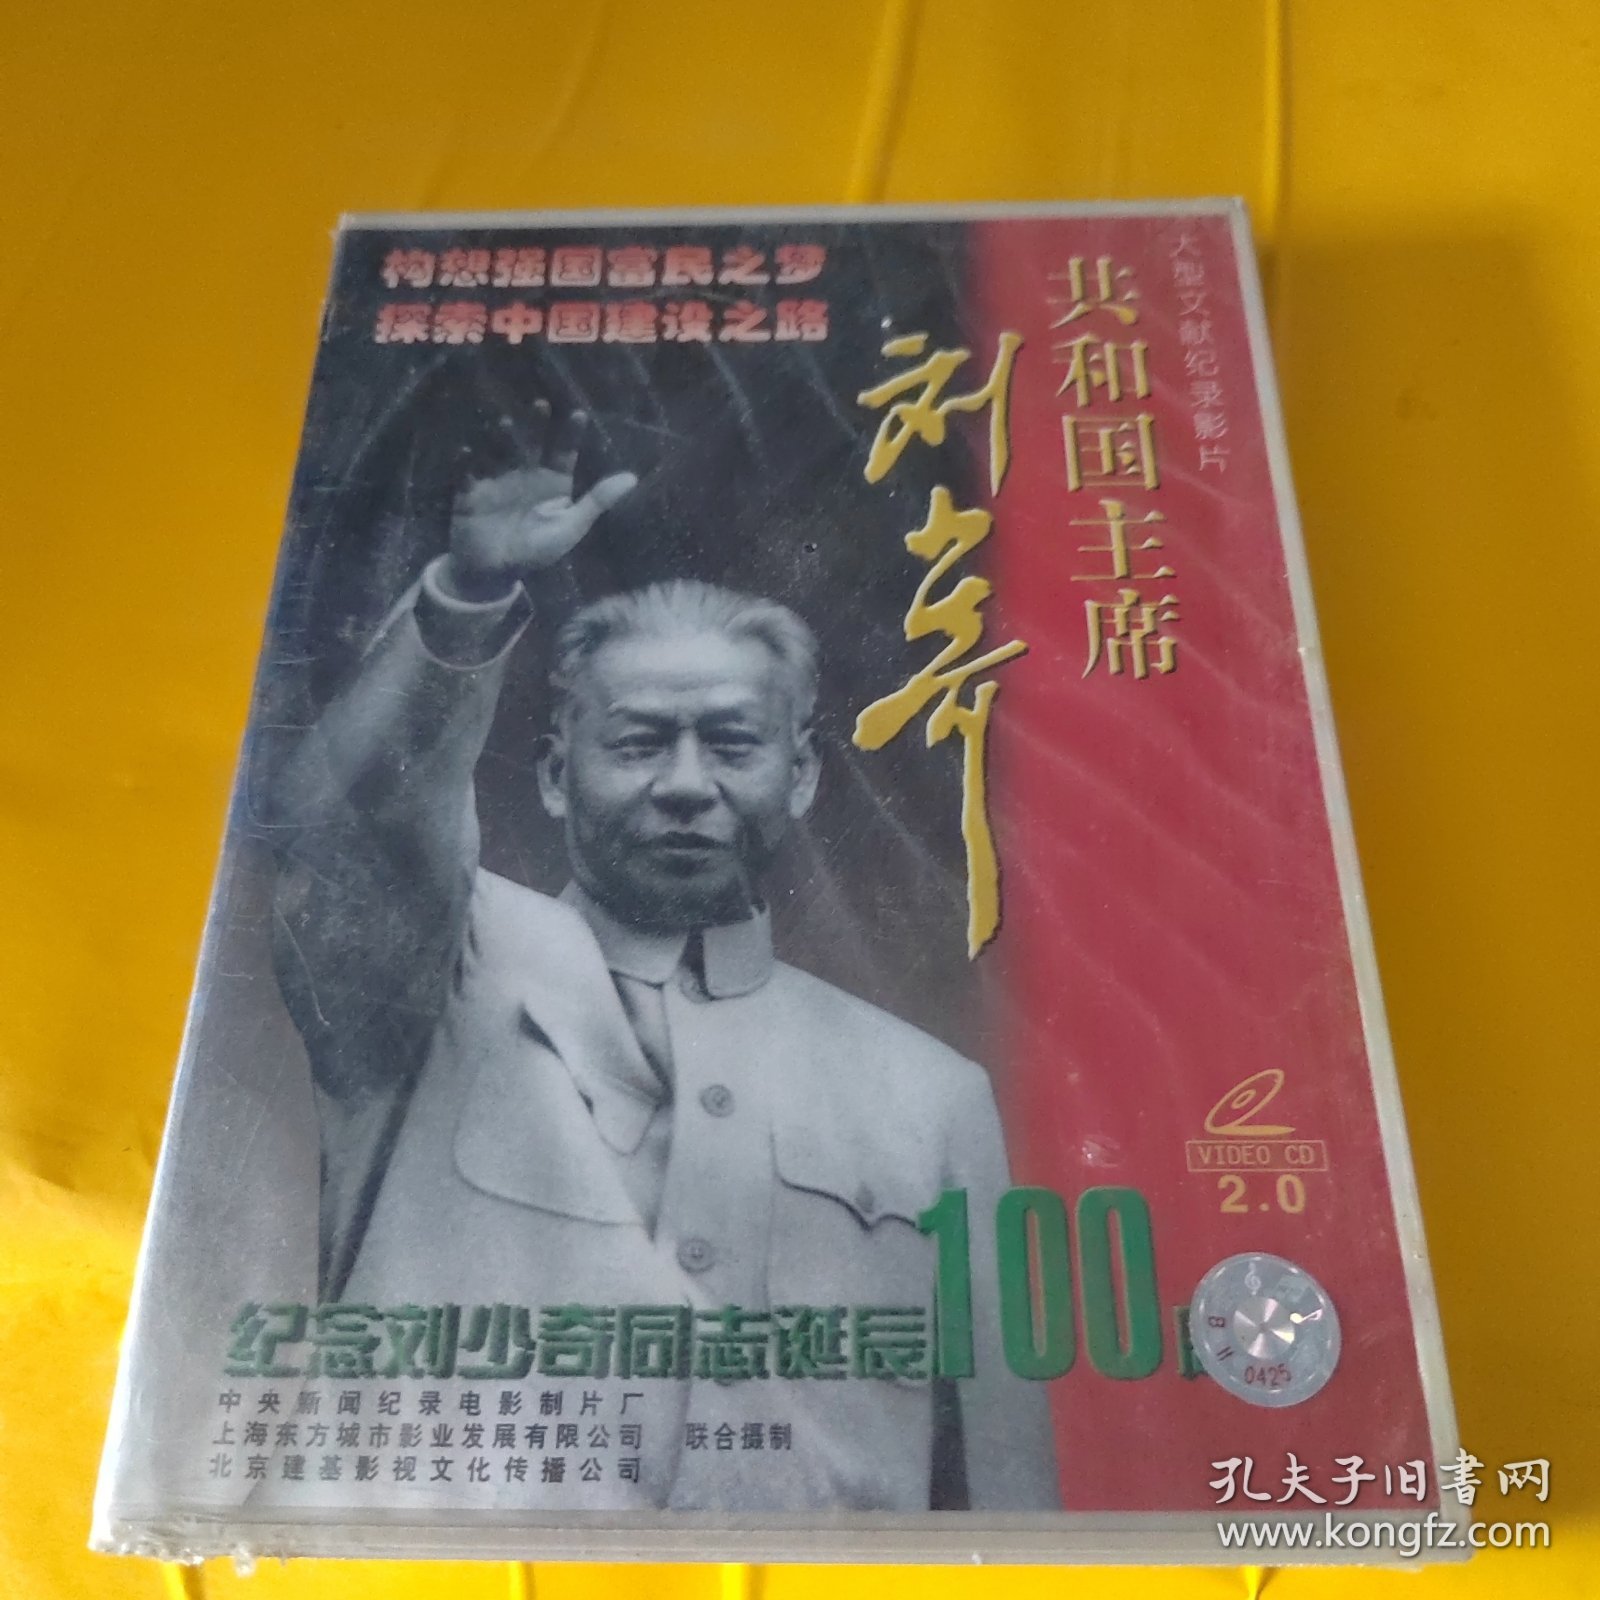 世纪伟人——共和国主席刘少奇 （VCD双碟 ） 未开封